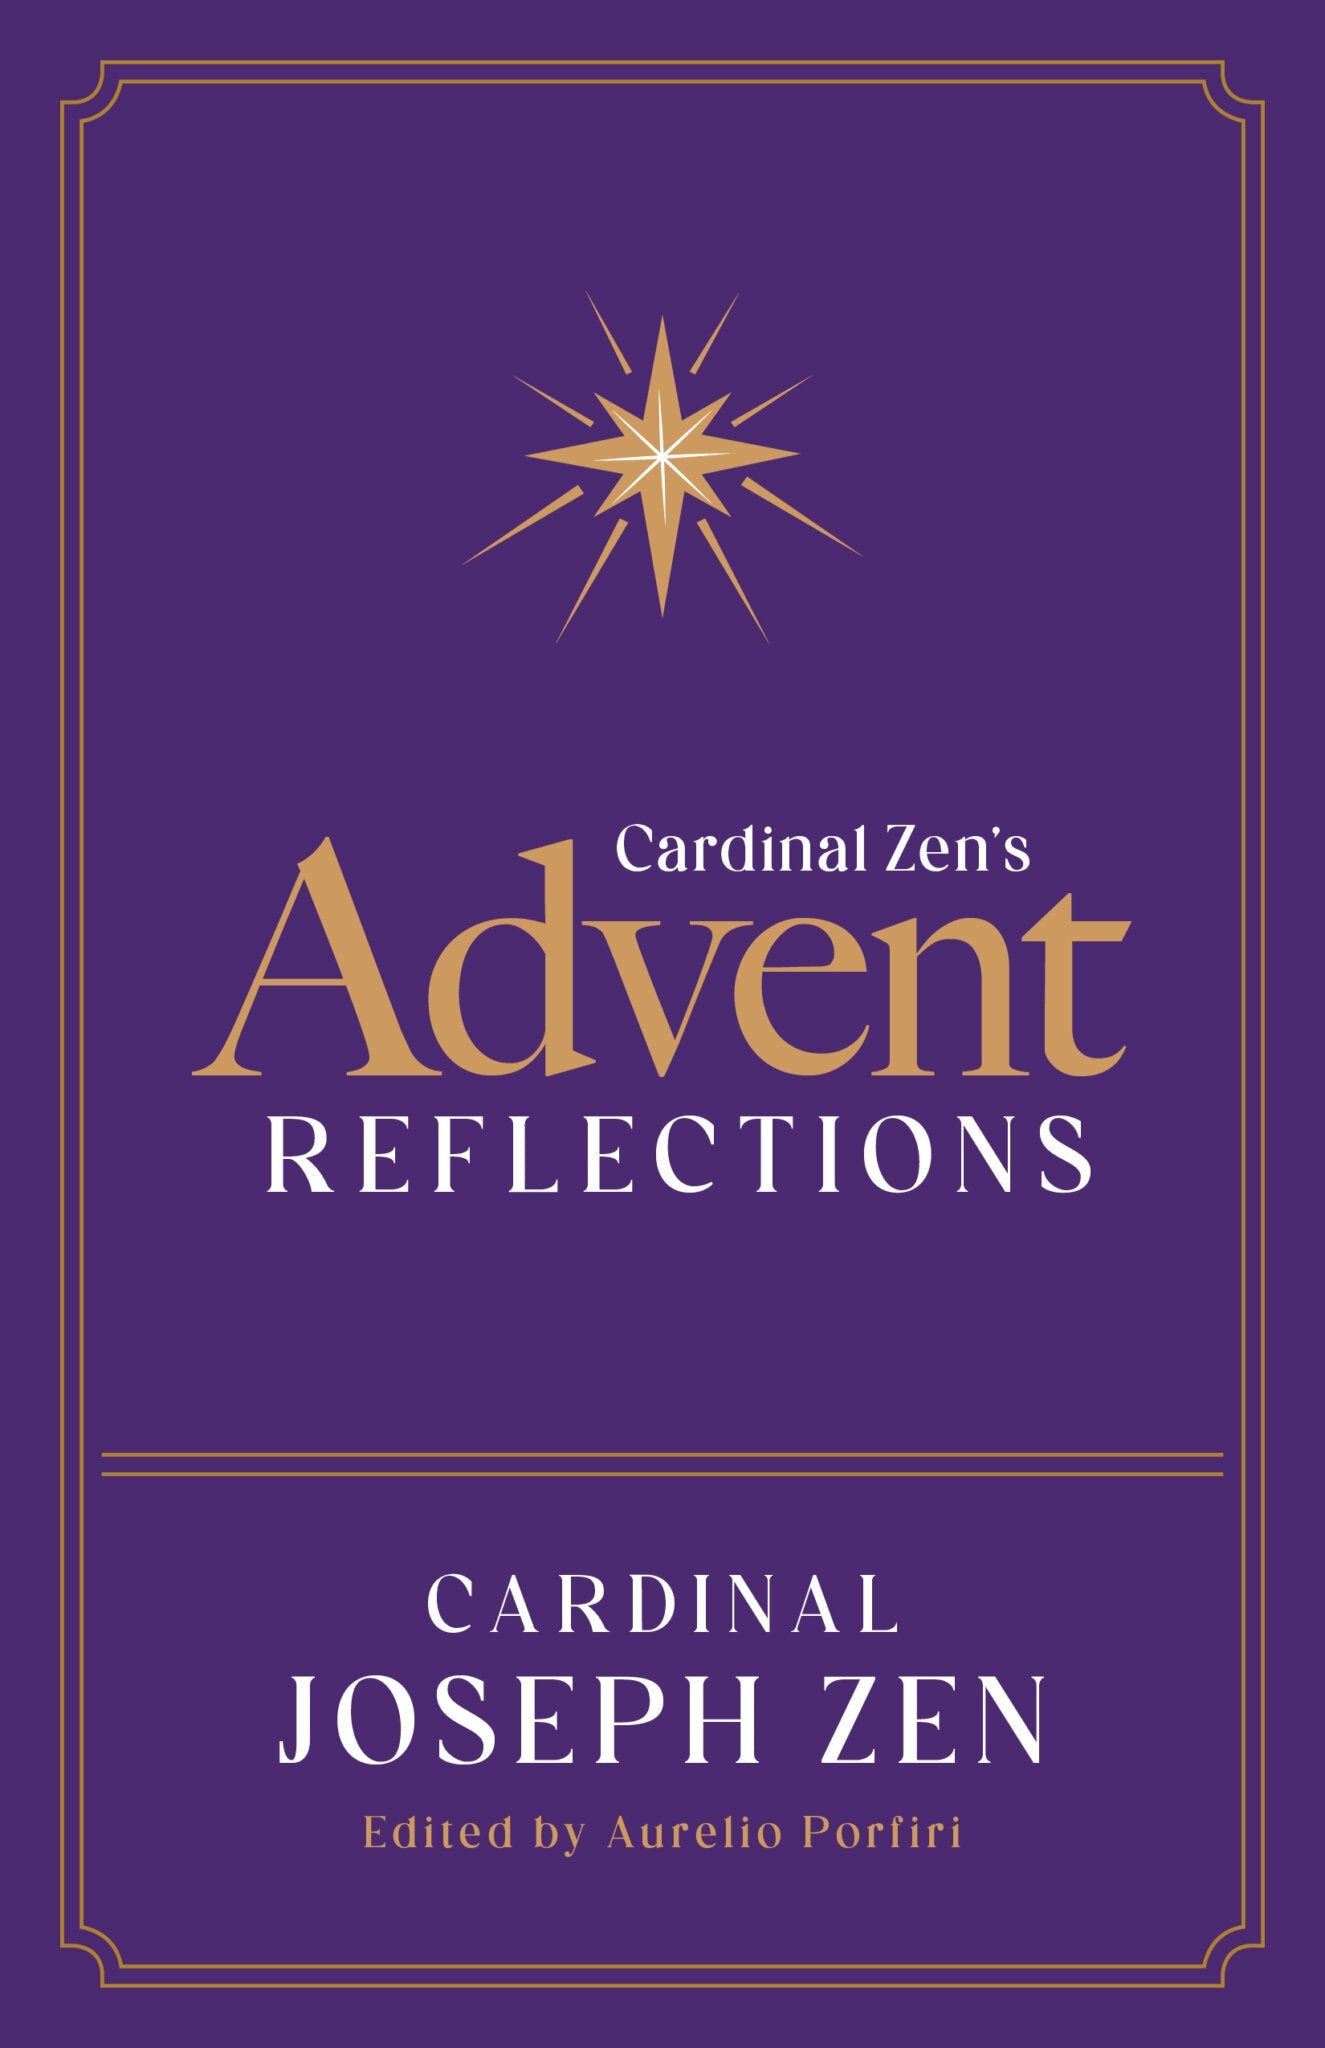 Cardinal Zen’s Advent Reflections